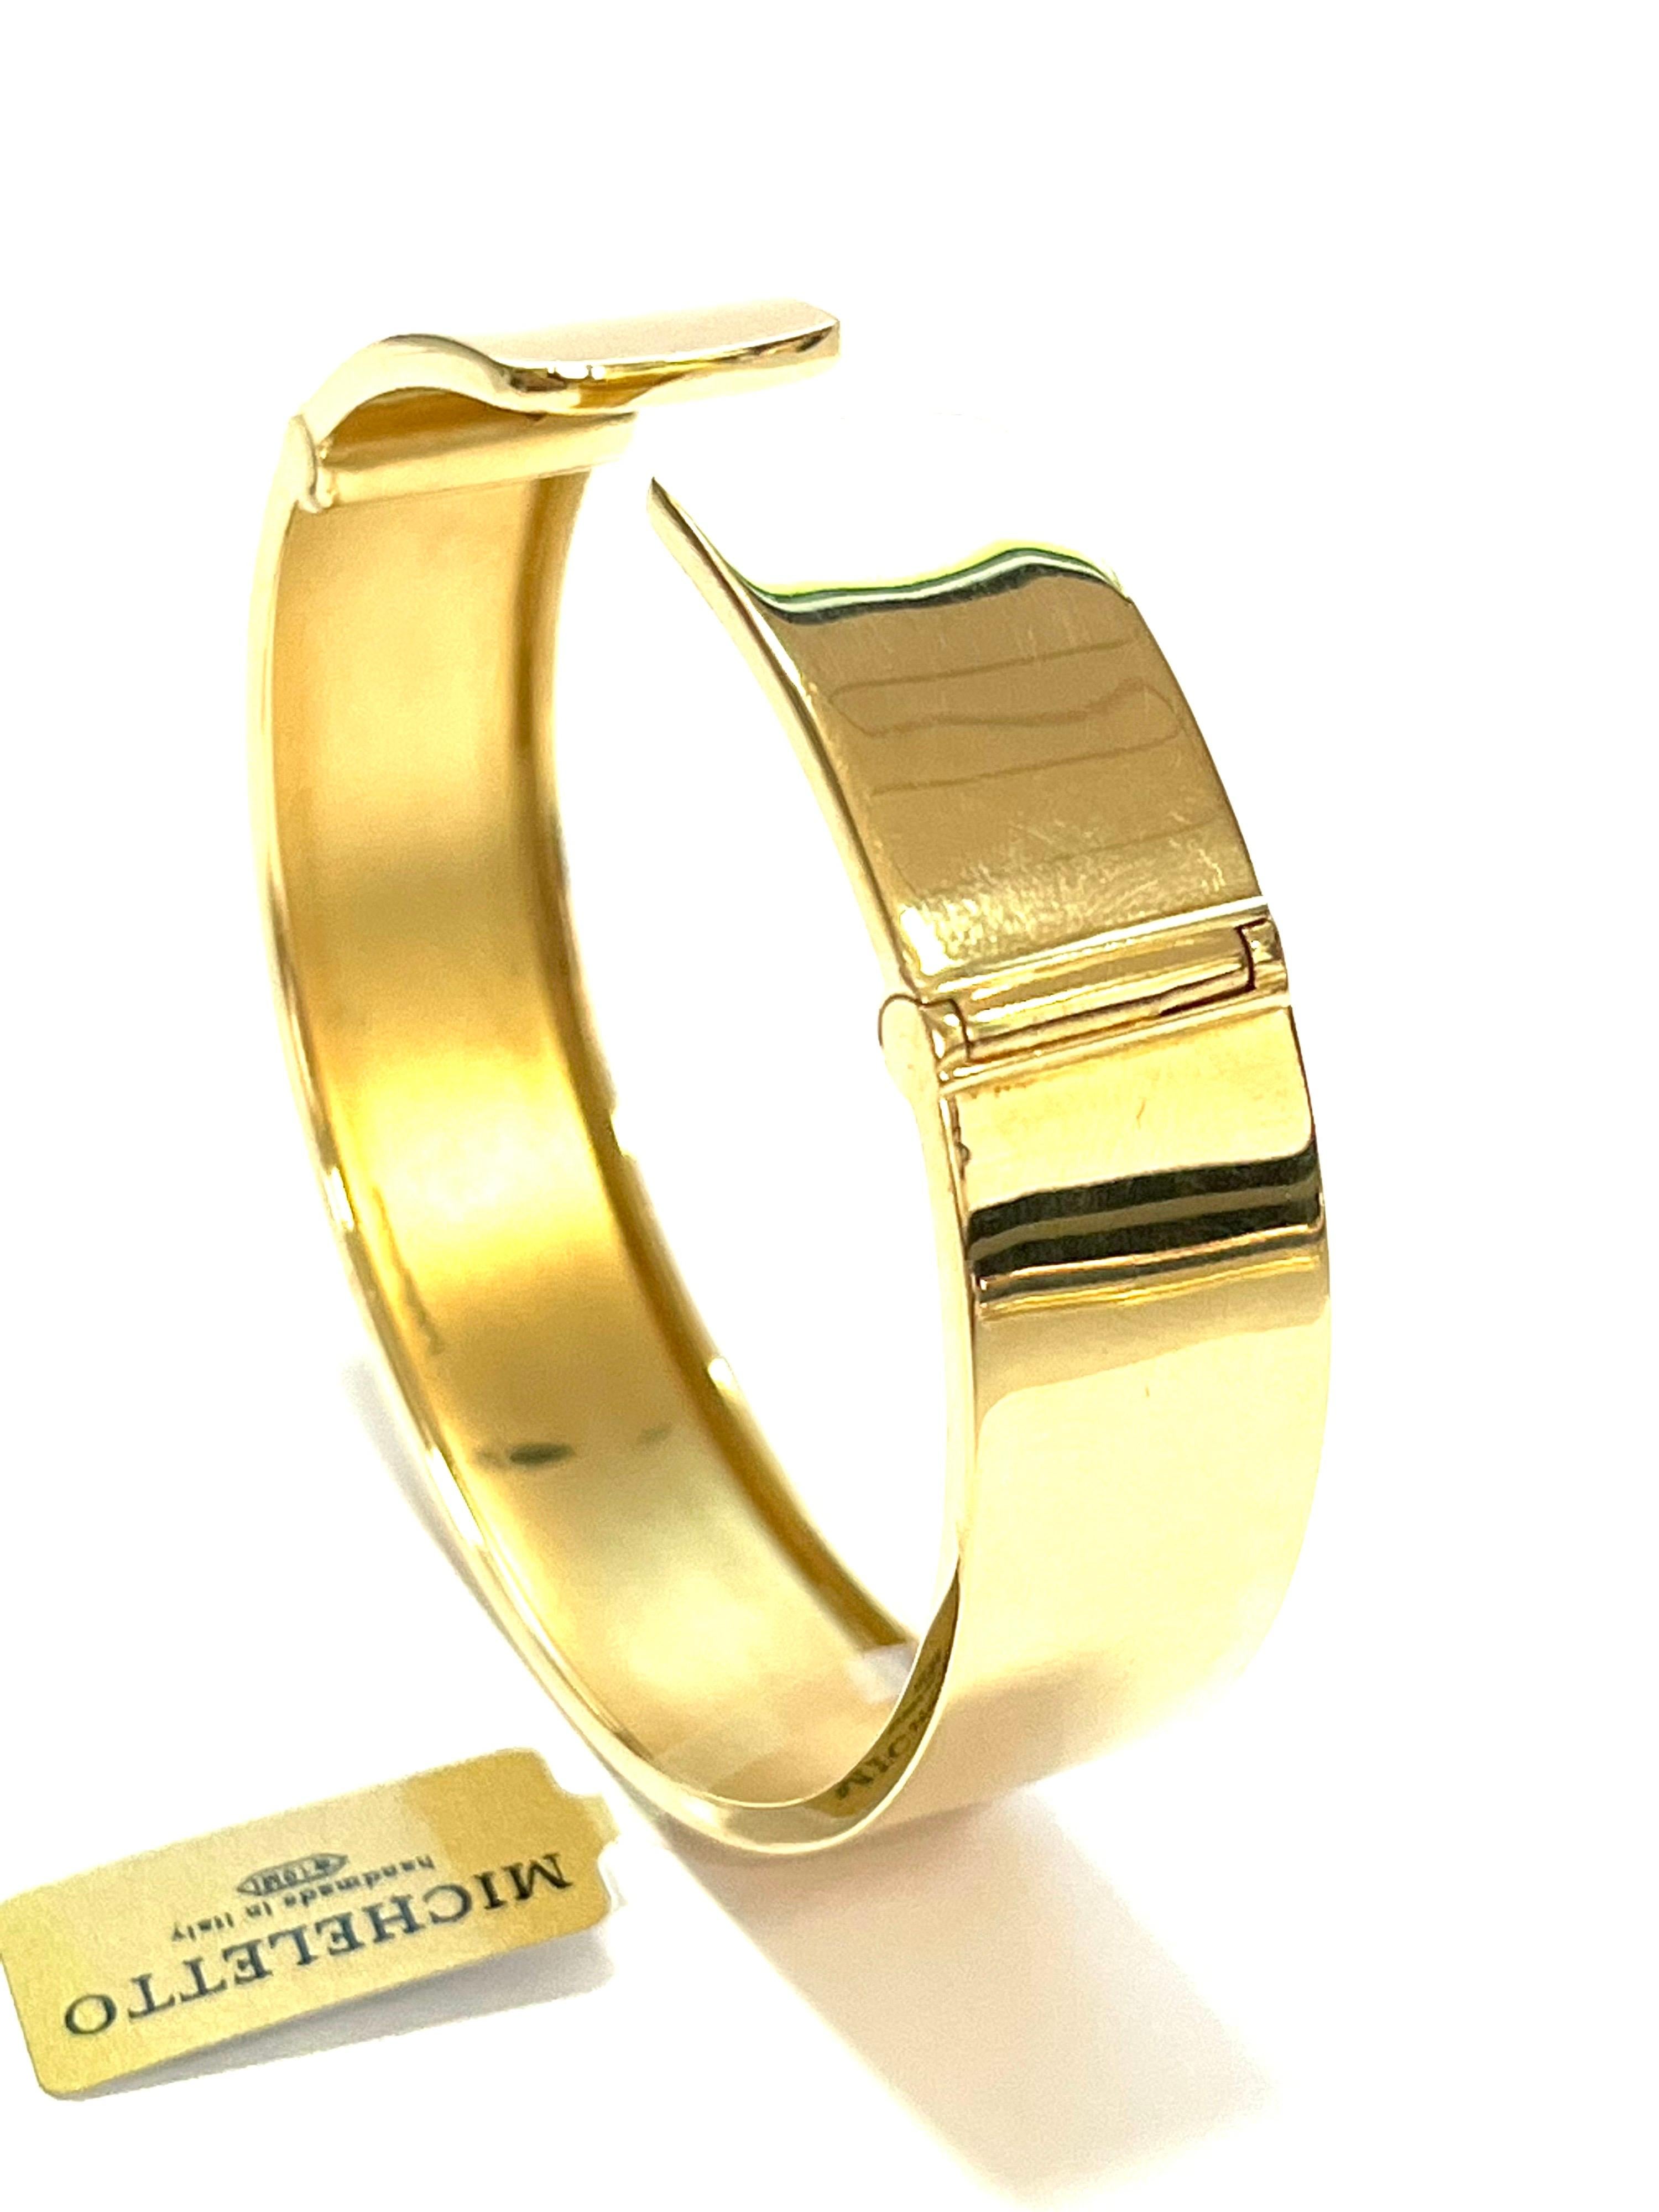 Schlichtes Manschettenarmband aus 18 Karat Gelbgold mit zwei Federn aus Weißgold, die ein bequemes Tragen des Armbands ermöglichen.
Modernes und sauberes Design.
Gesamtgewicht Gold gr 29,1
Höhe cm.1,5
STAMP ITALIEN  10 MI  750

Die Halskette ist